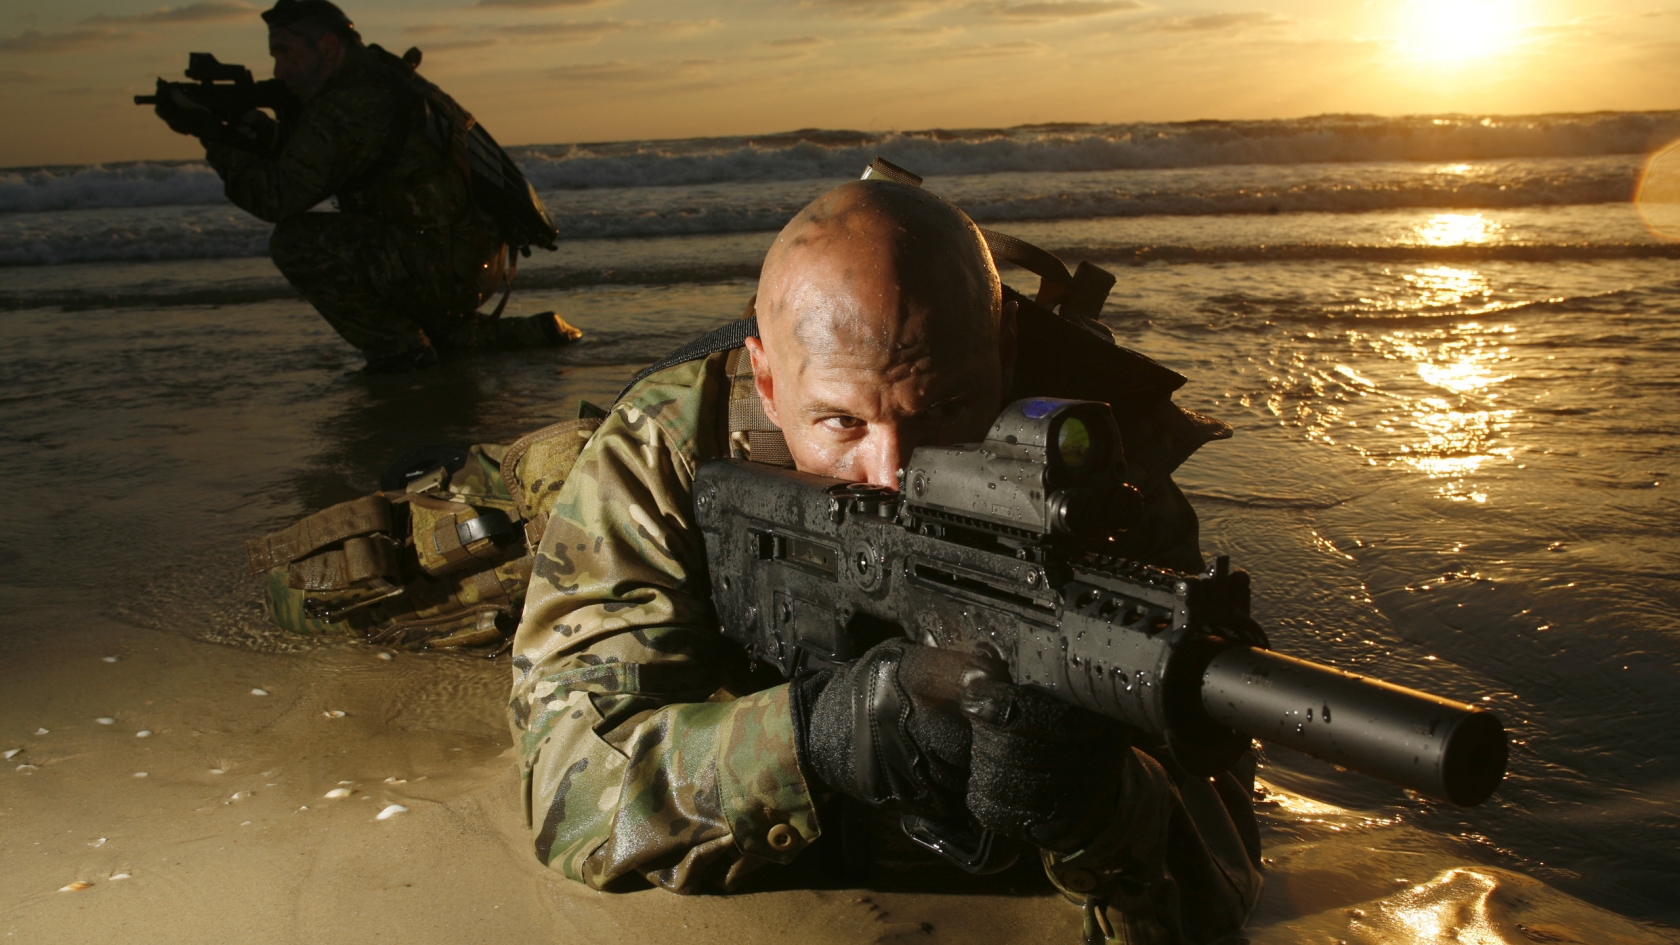 Sniper War for 1680 x 945 HDTV resolution